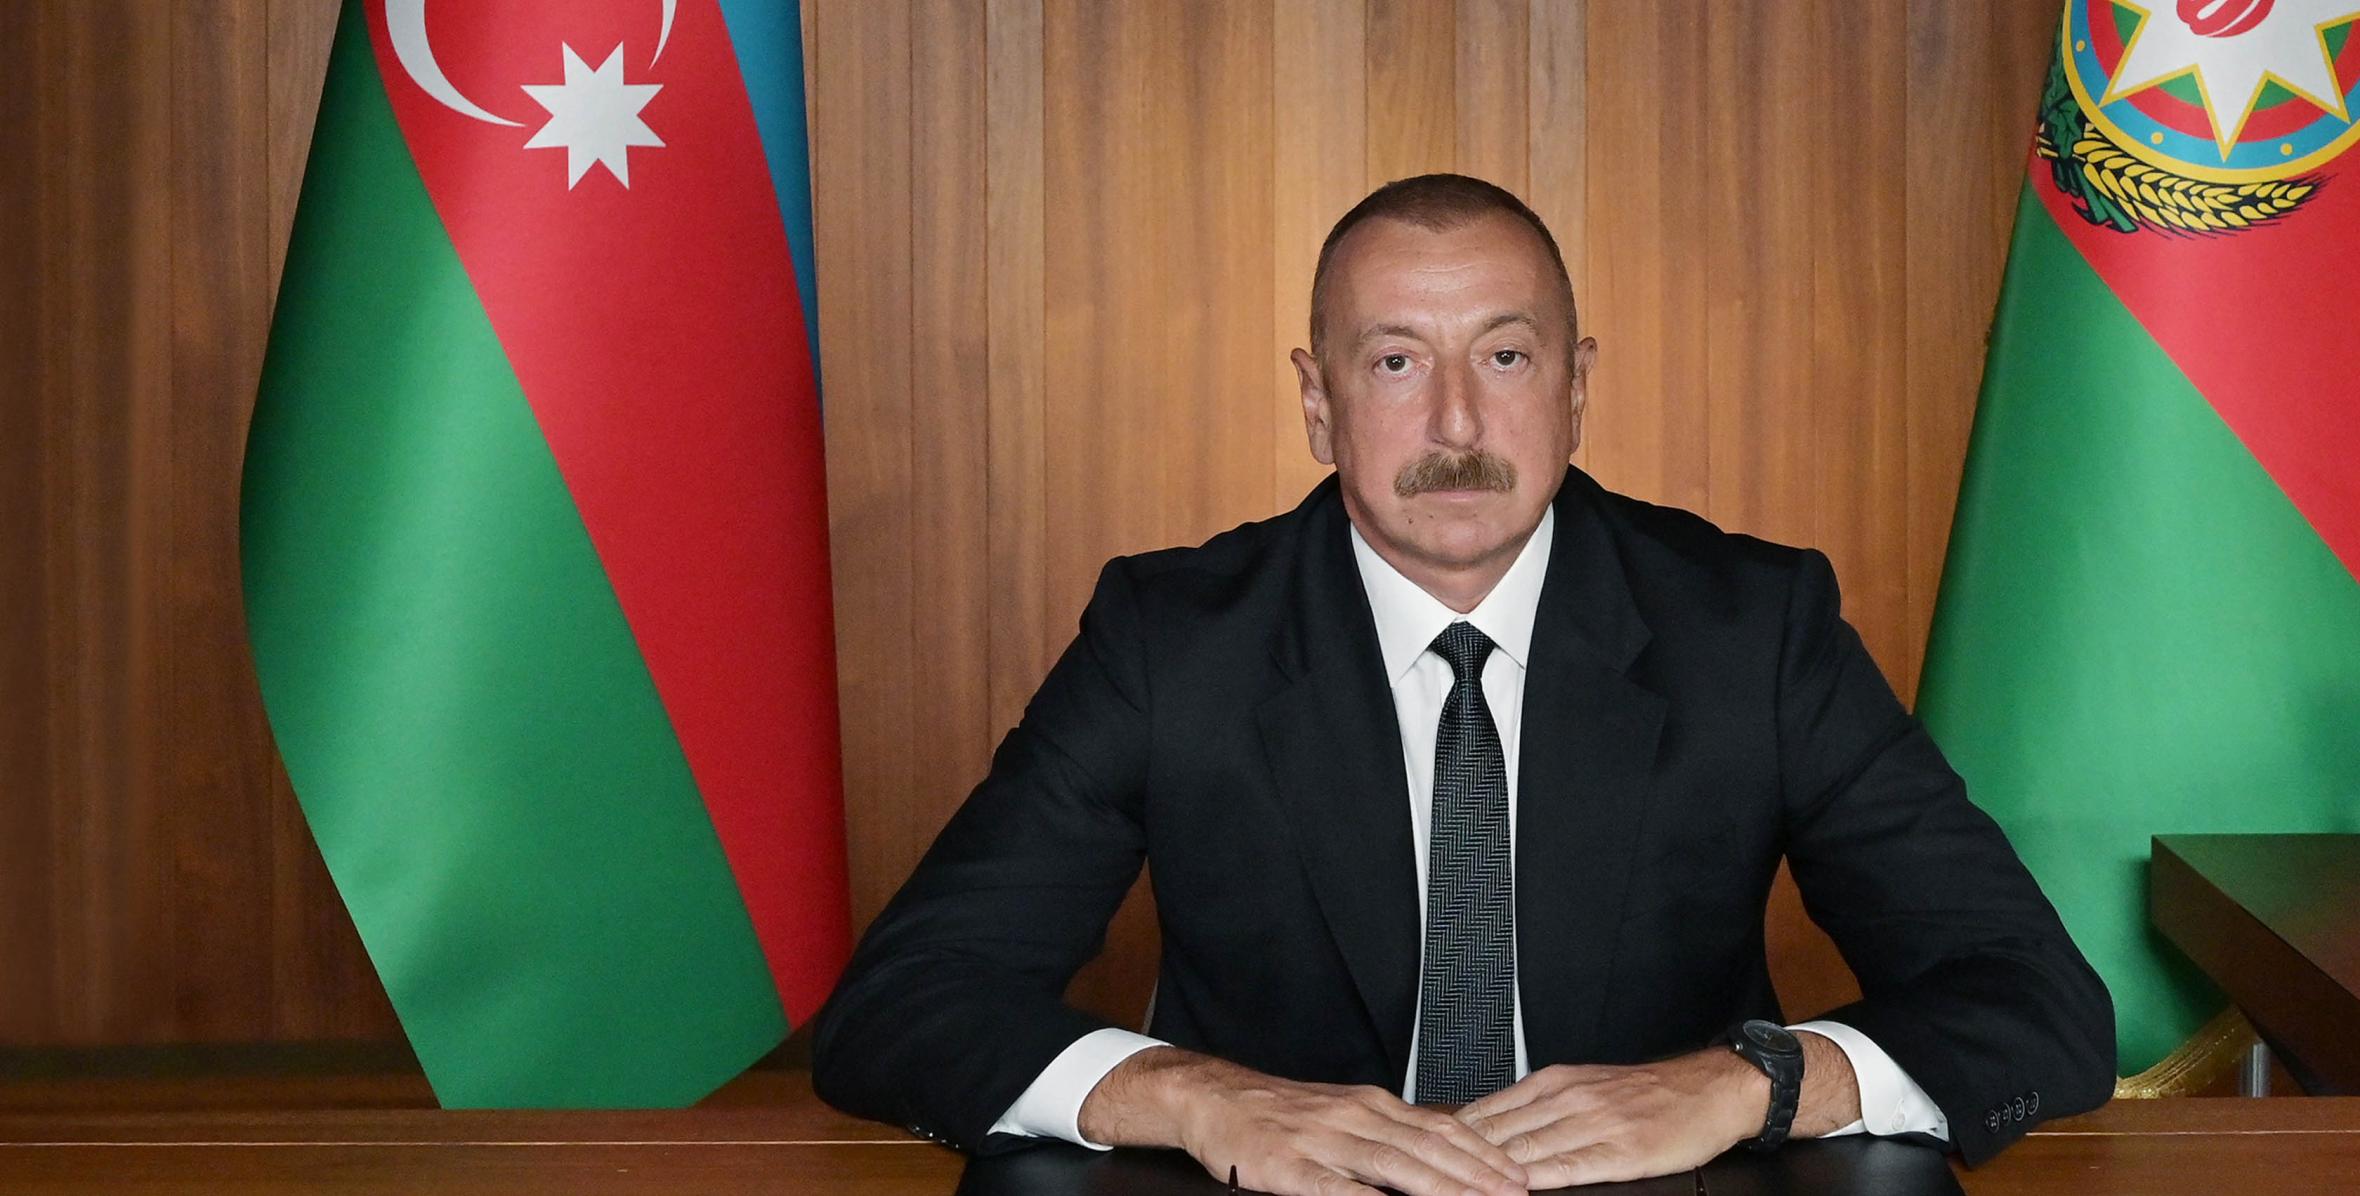 Azərbaycan Prezidenti, Qoşulmama Hərəkatının sədri İlham Əliyev BMT Baş Assambleyasının 75-ci Sessiyası çərçivəsində BMT-nin 75 illiyinə həsr edilmiş Yüksək Səviyyəli İclasında videoformatda çıxış edib